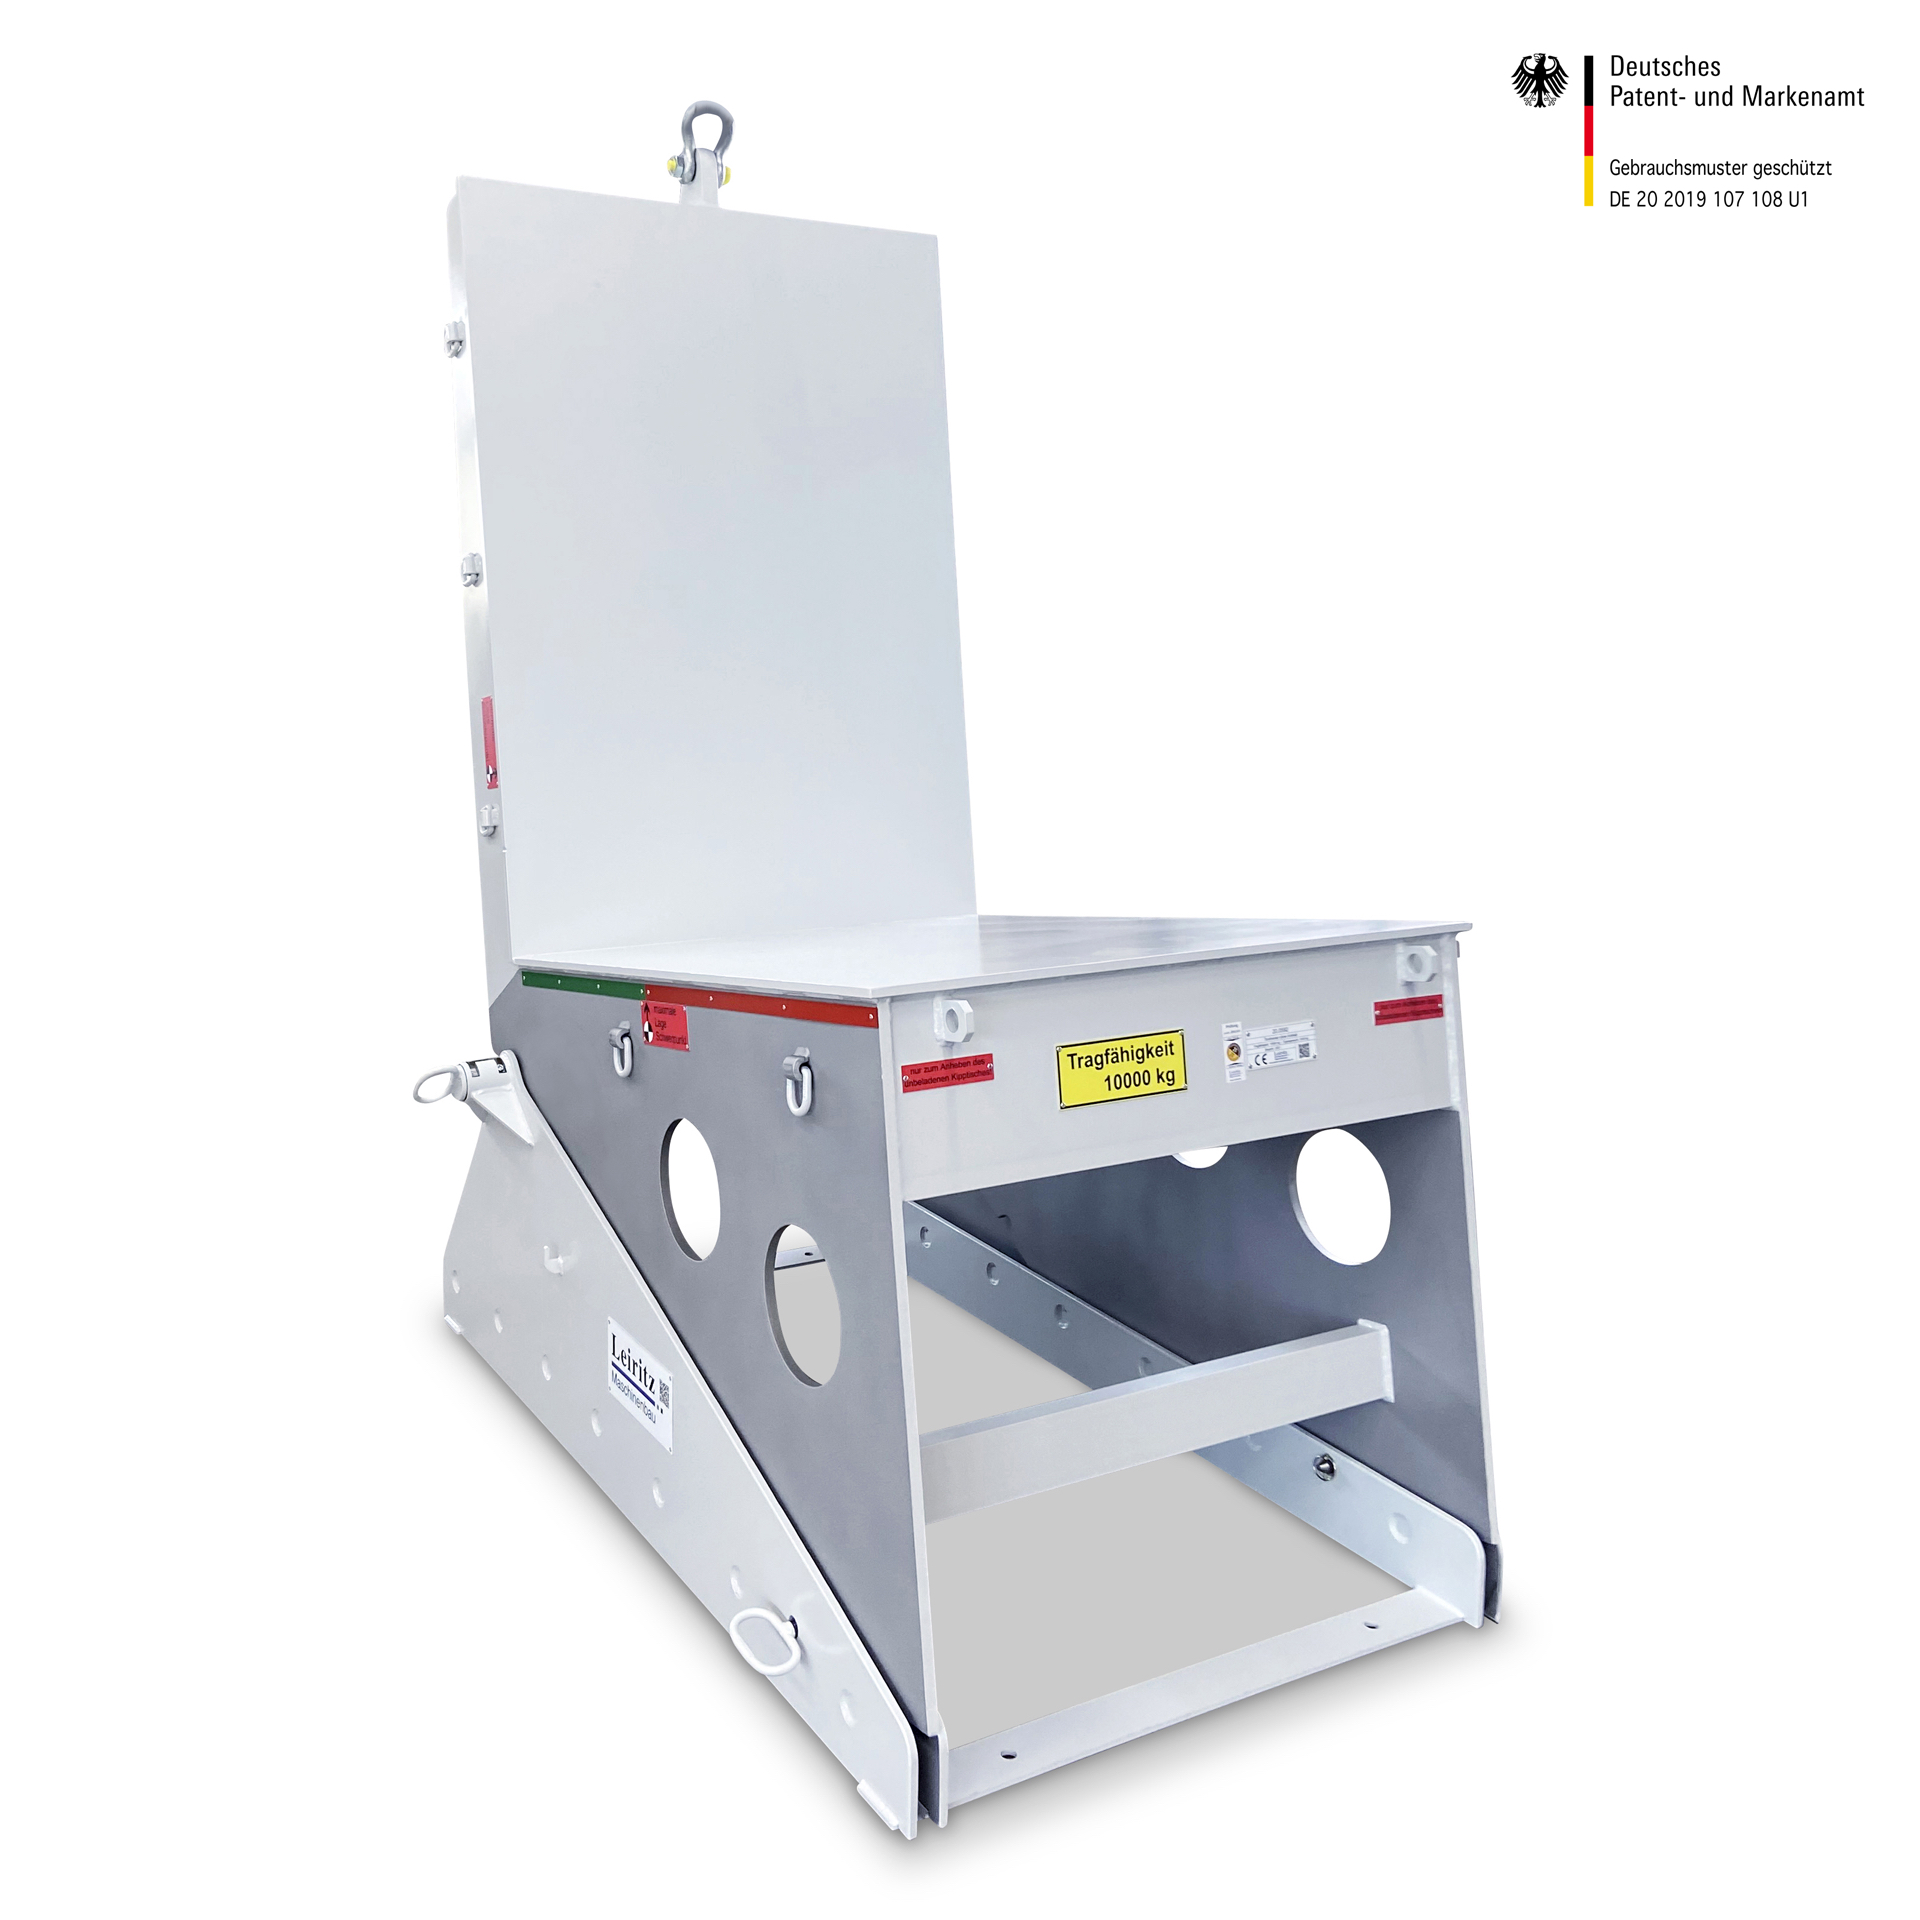 Bestellen Sie den Werkzeugwender-Wendetisch direkt beim führenden Hersteller Leiritz Maschinenbau in Pappenheim in Bayern.